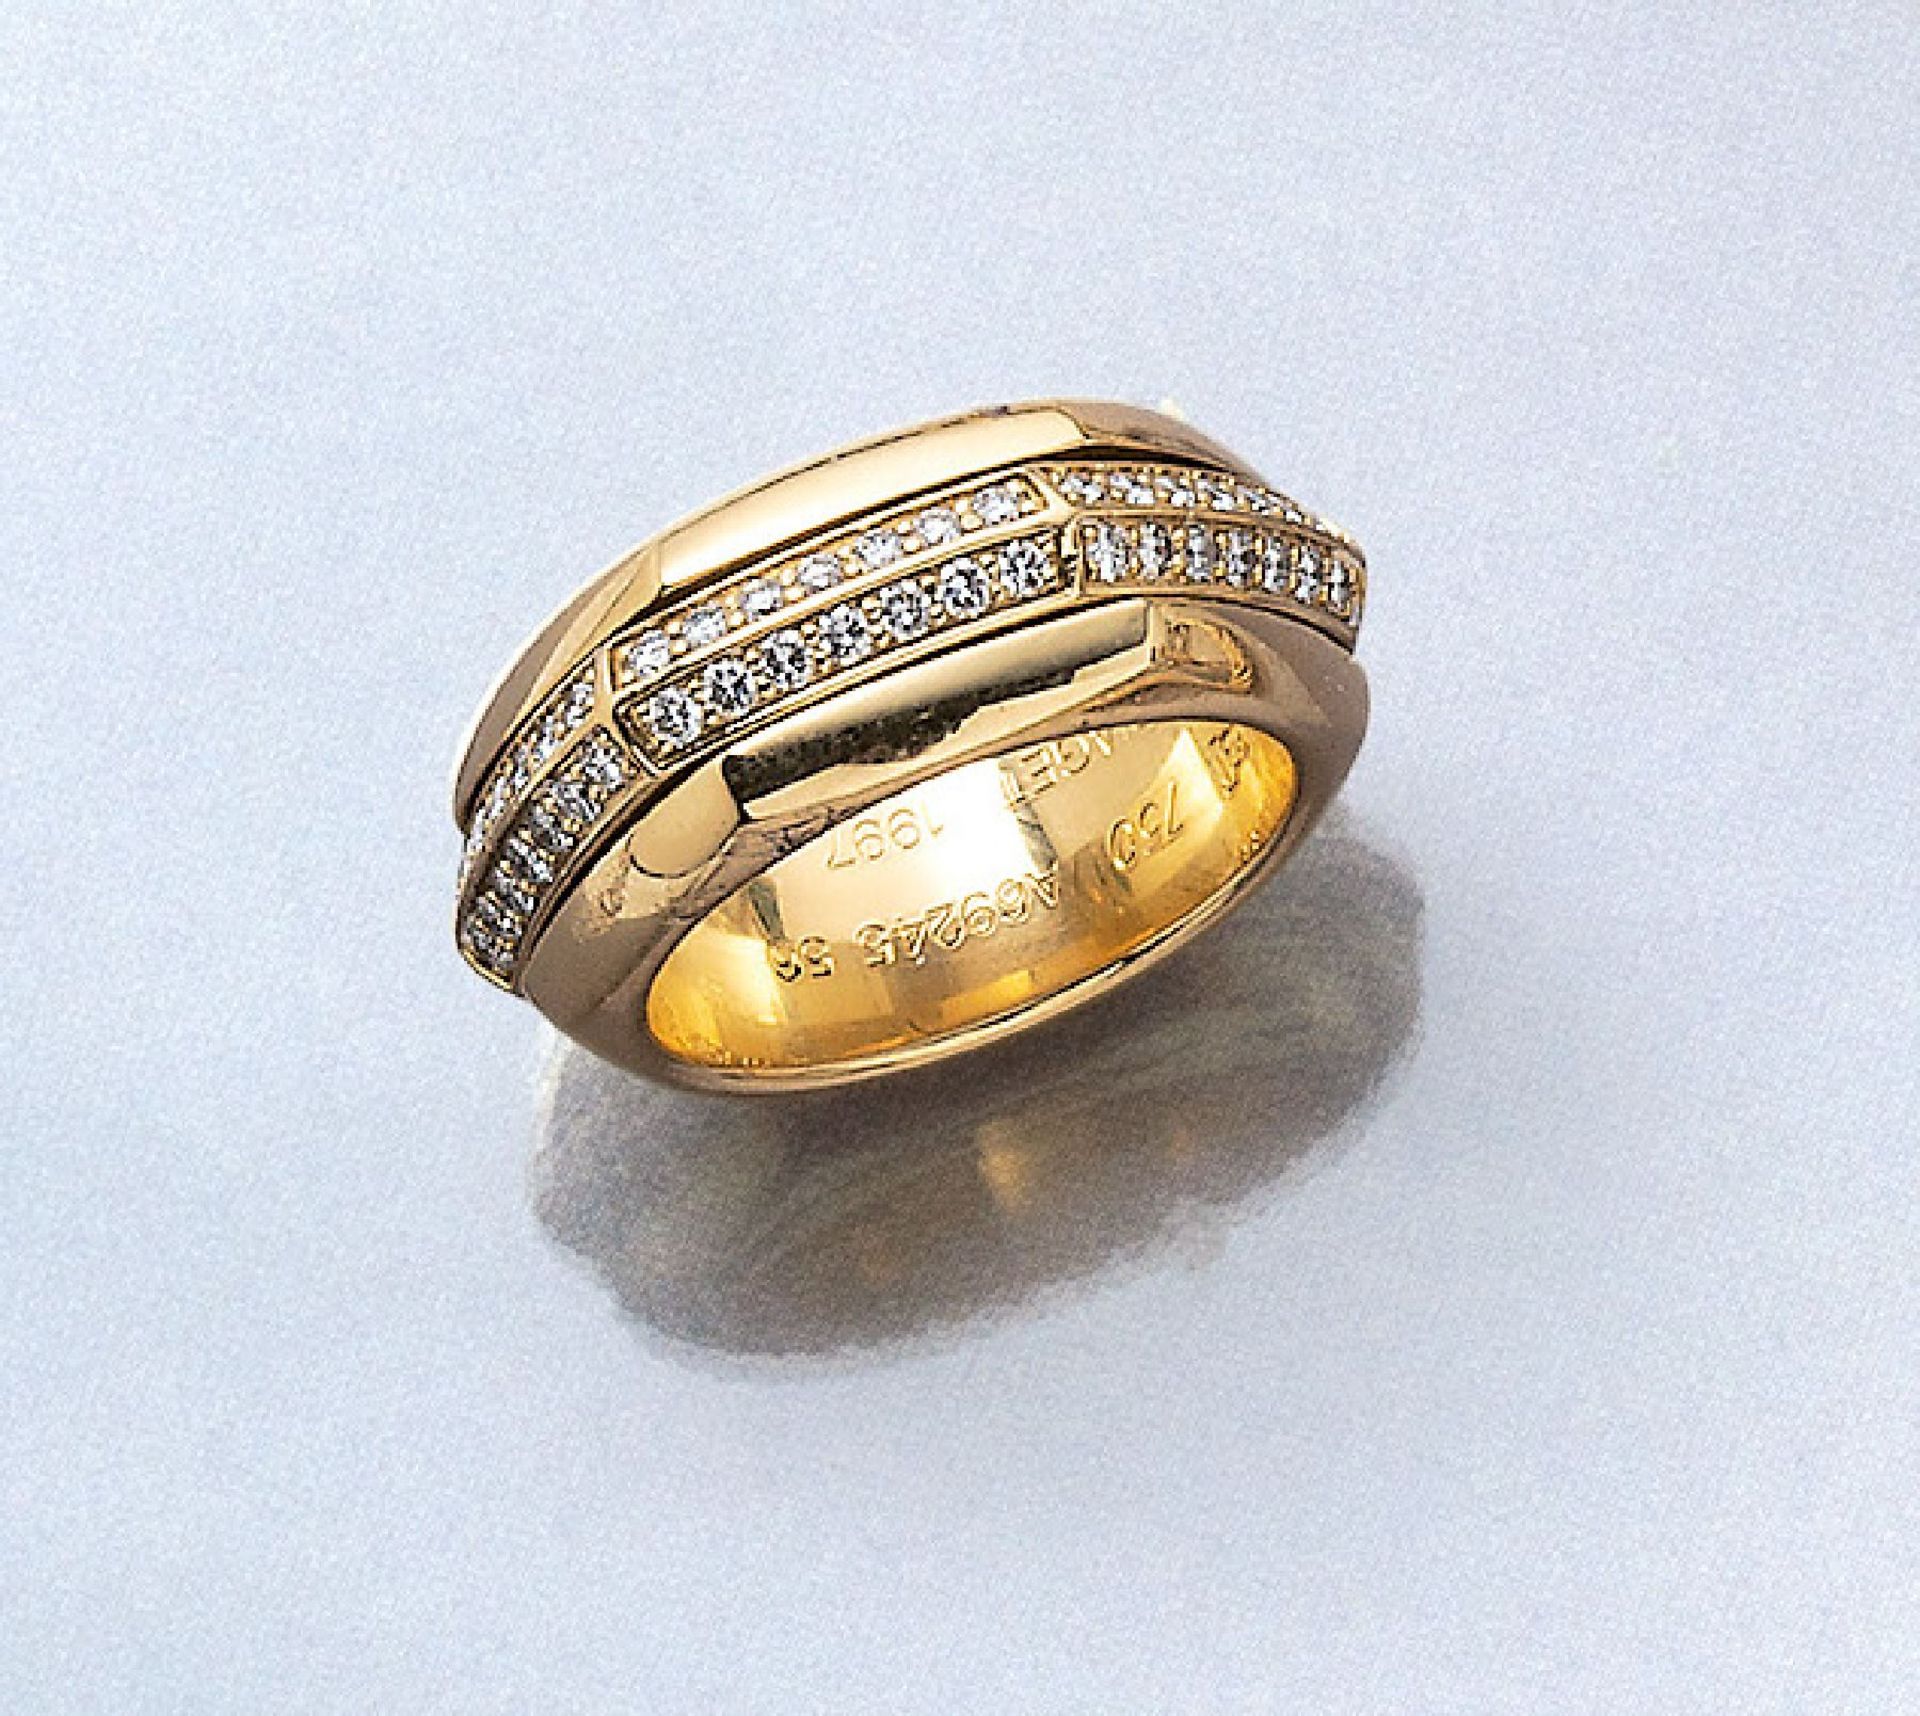 18 kt Gold PIAGET Ring mit Brillanten, GG 750/000, Mittelschiene drehbar, 2-rhg. bes. mit Brillanten